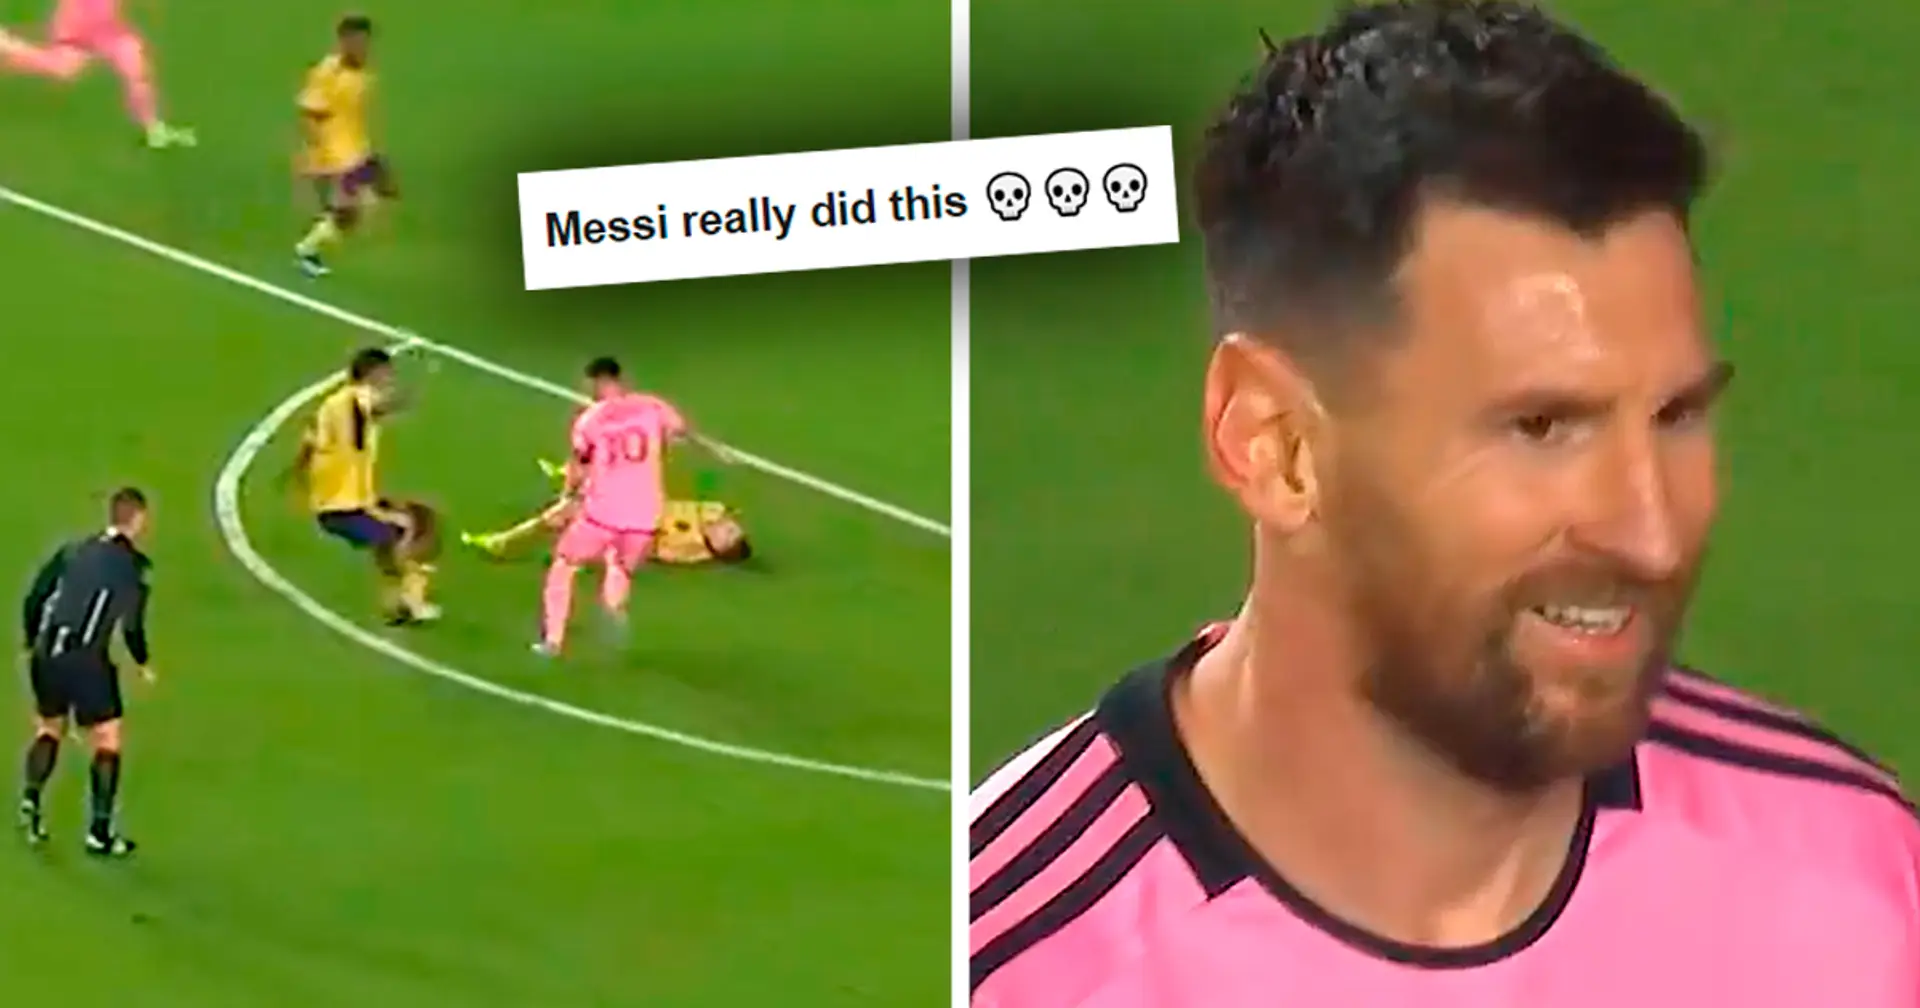 Visto: Messi pisa a un jugador que está lesionado – el video se vuelve viral